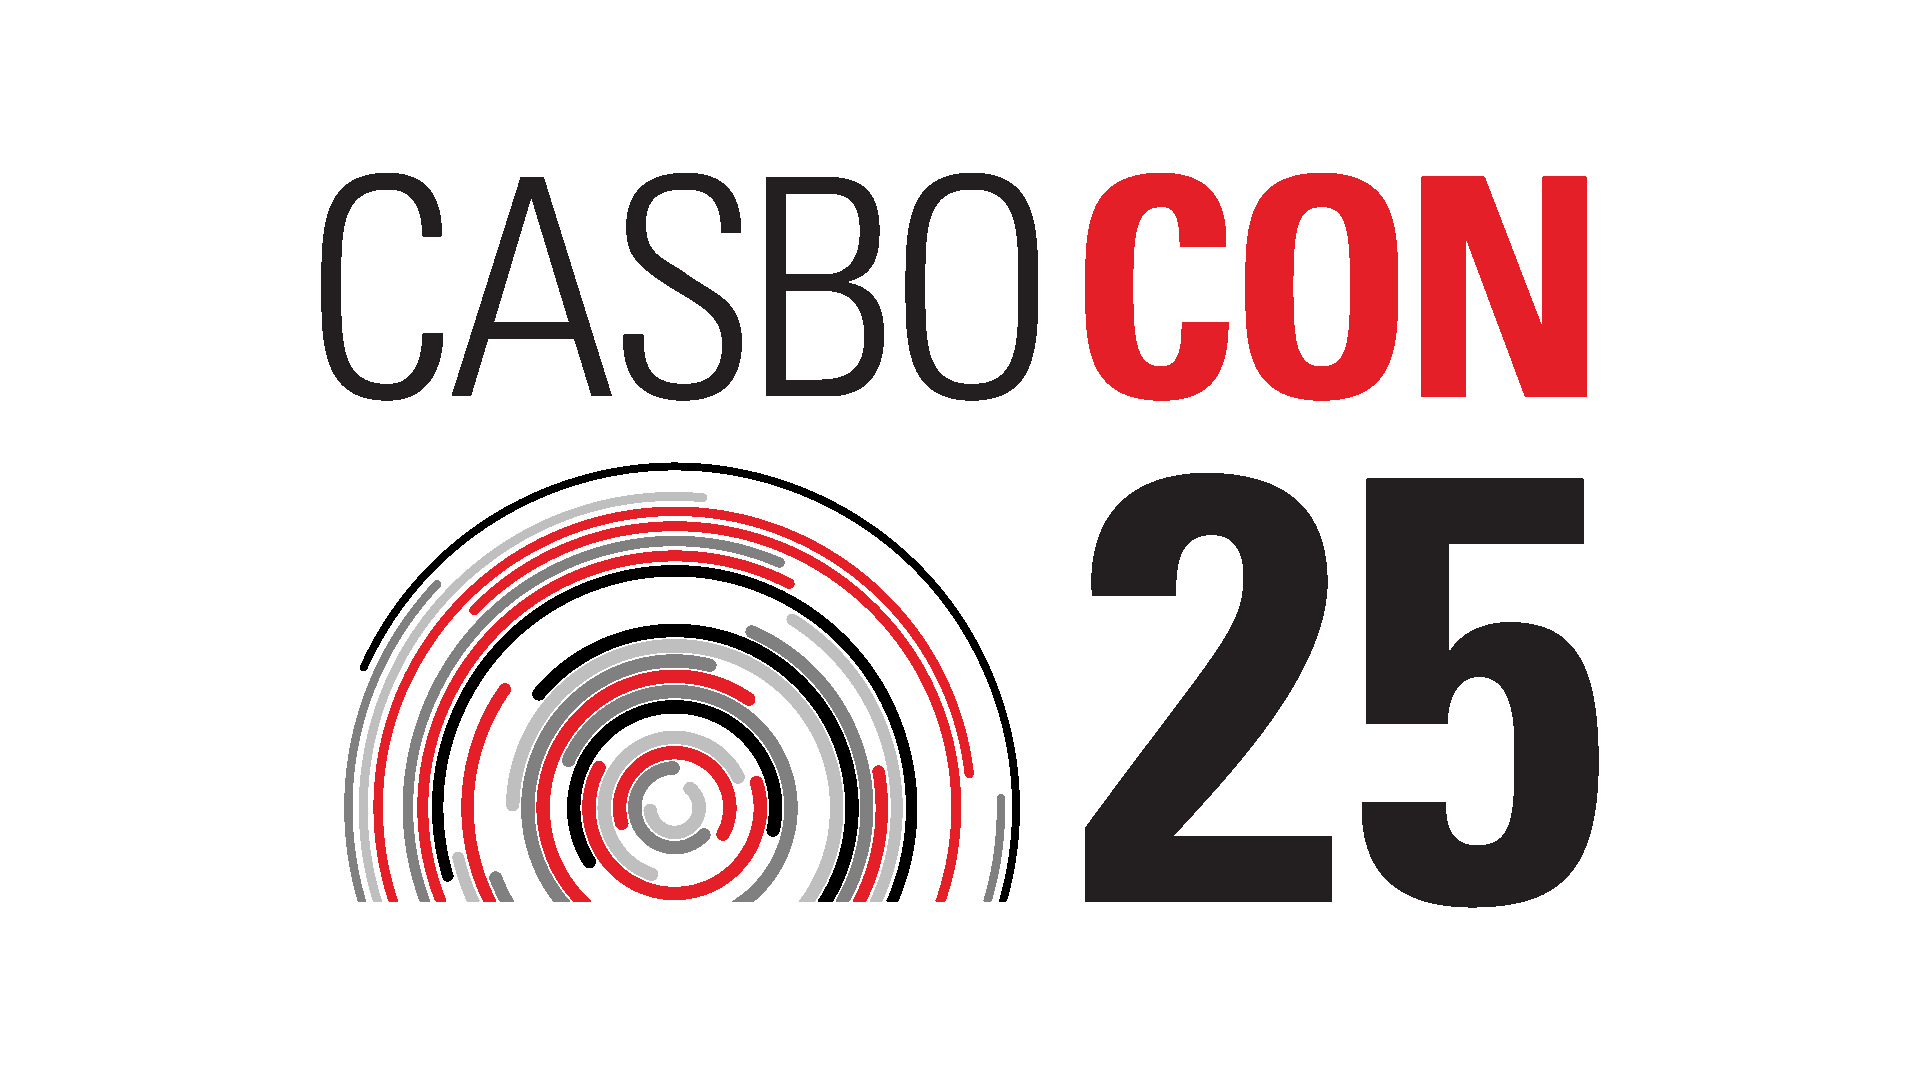 CASBO Con 25 logo graphic